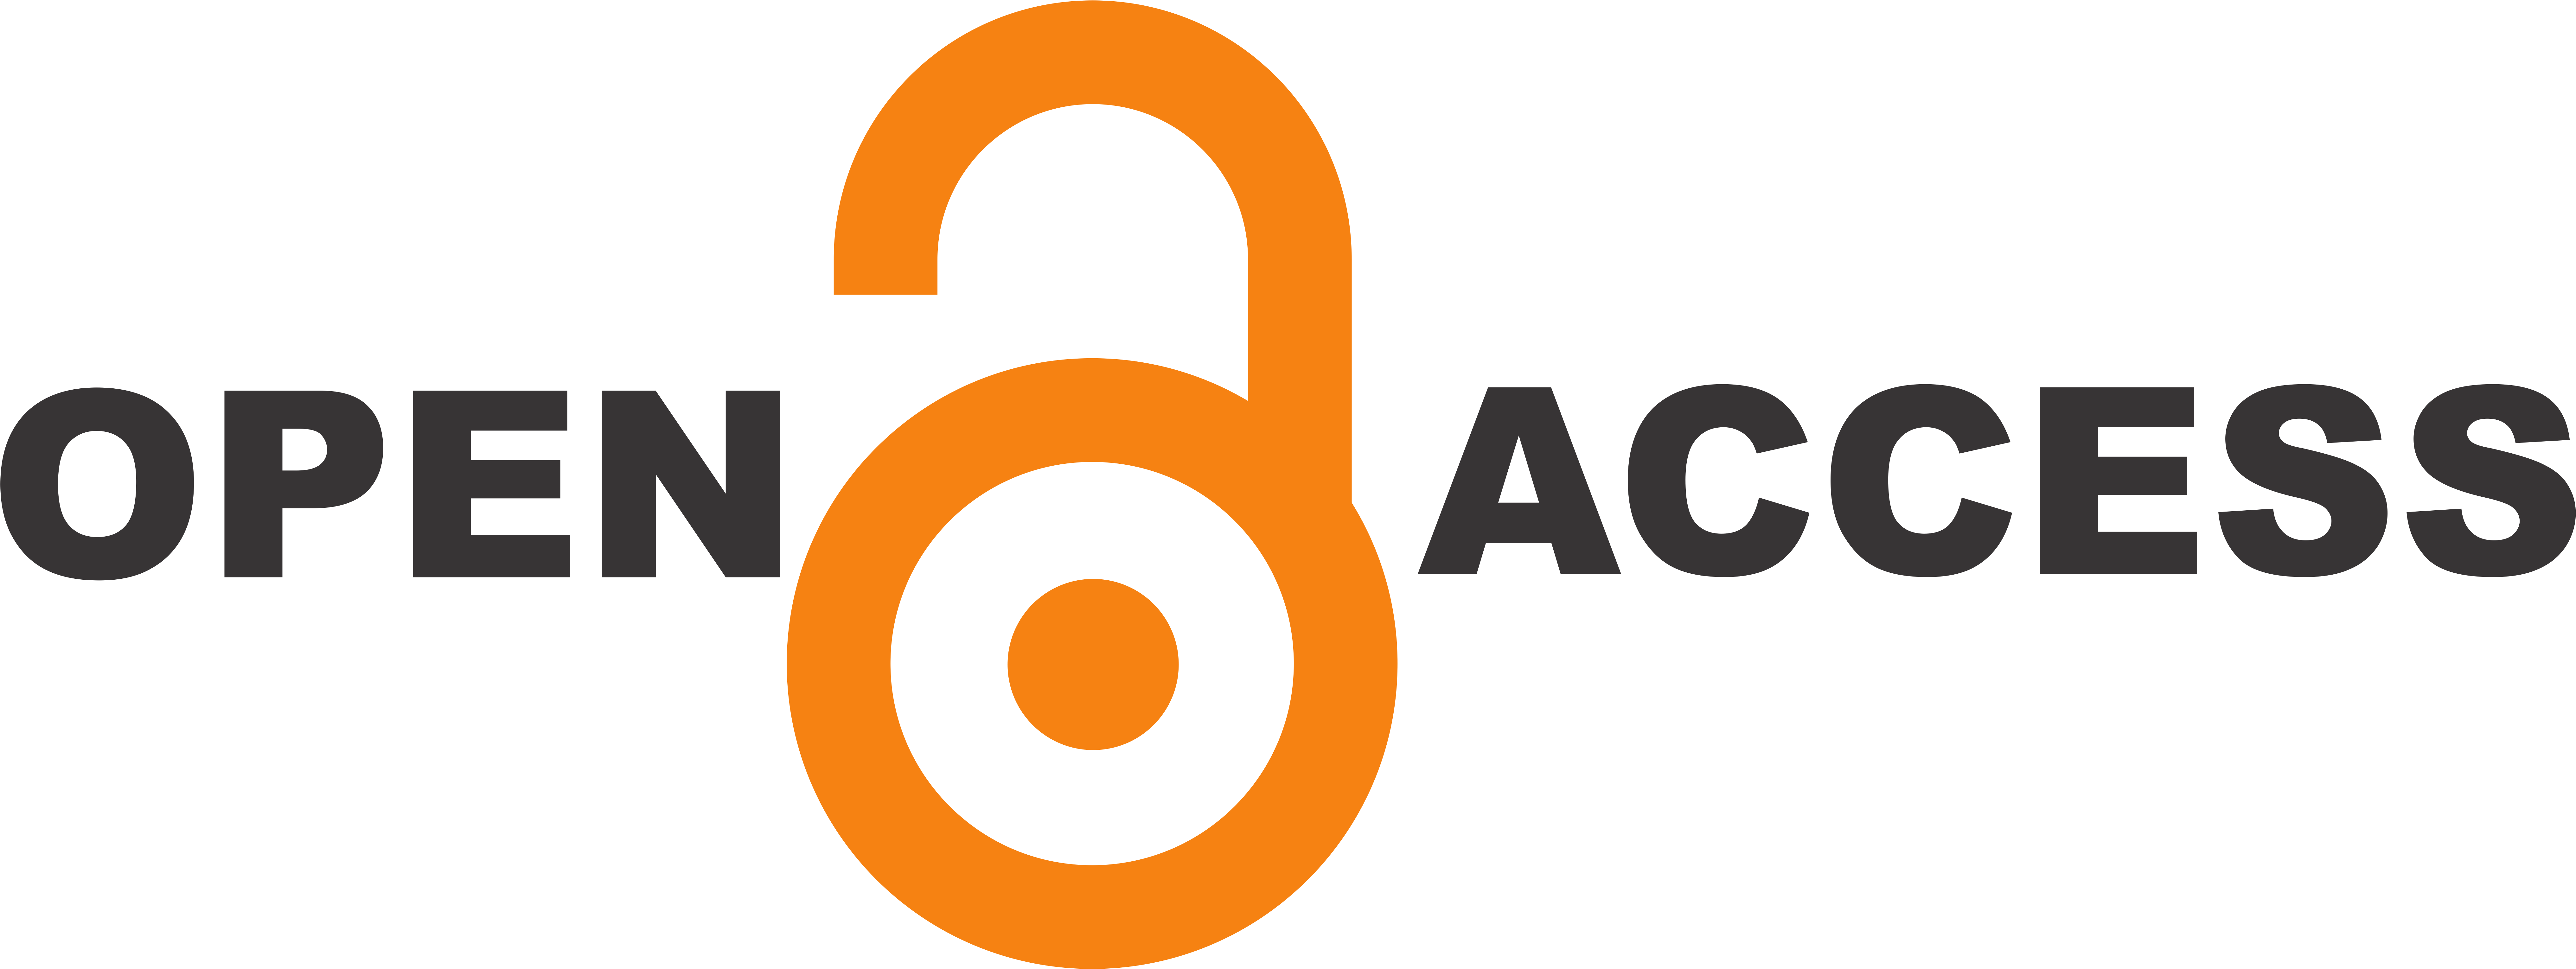 Gss Open Access Award - Open Access Logo Png (8186x3126)